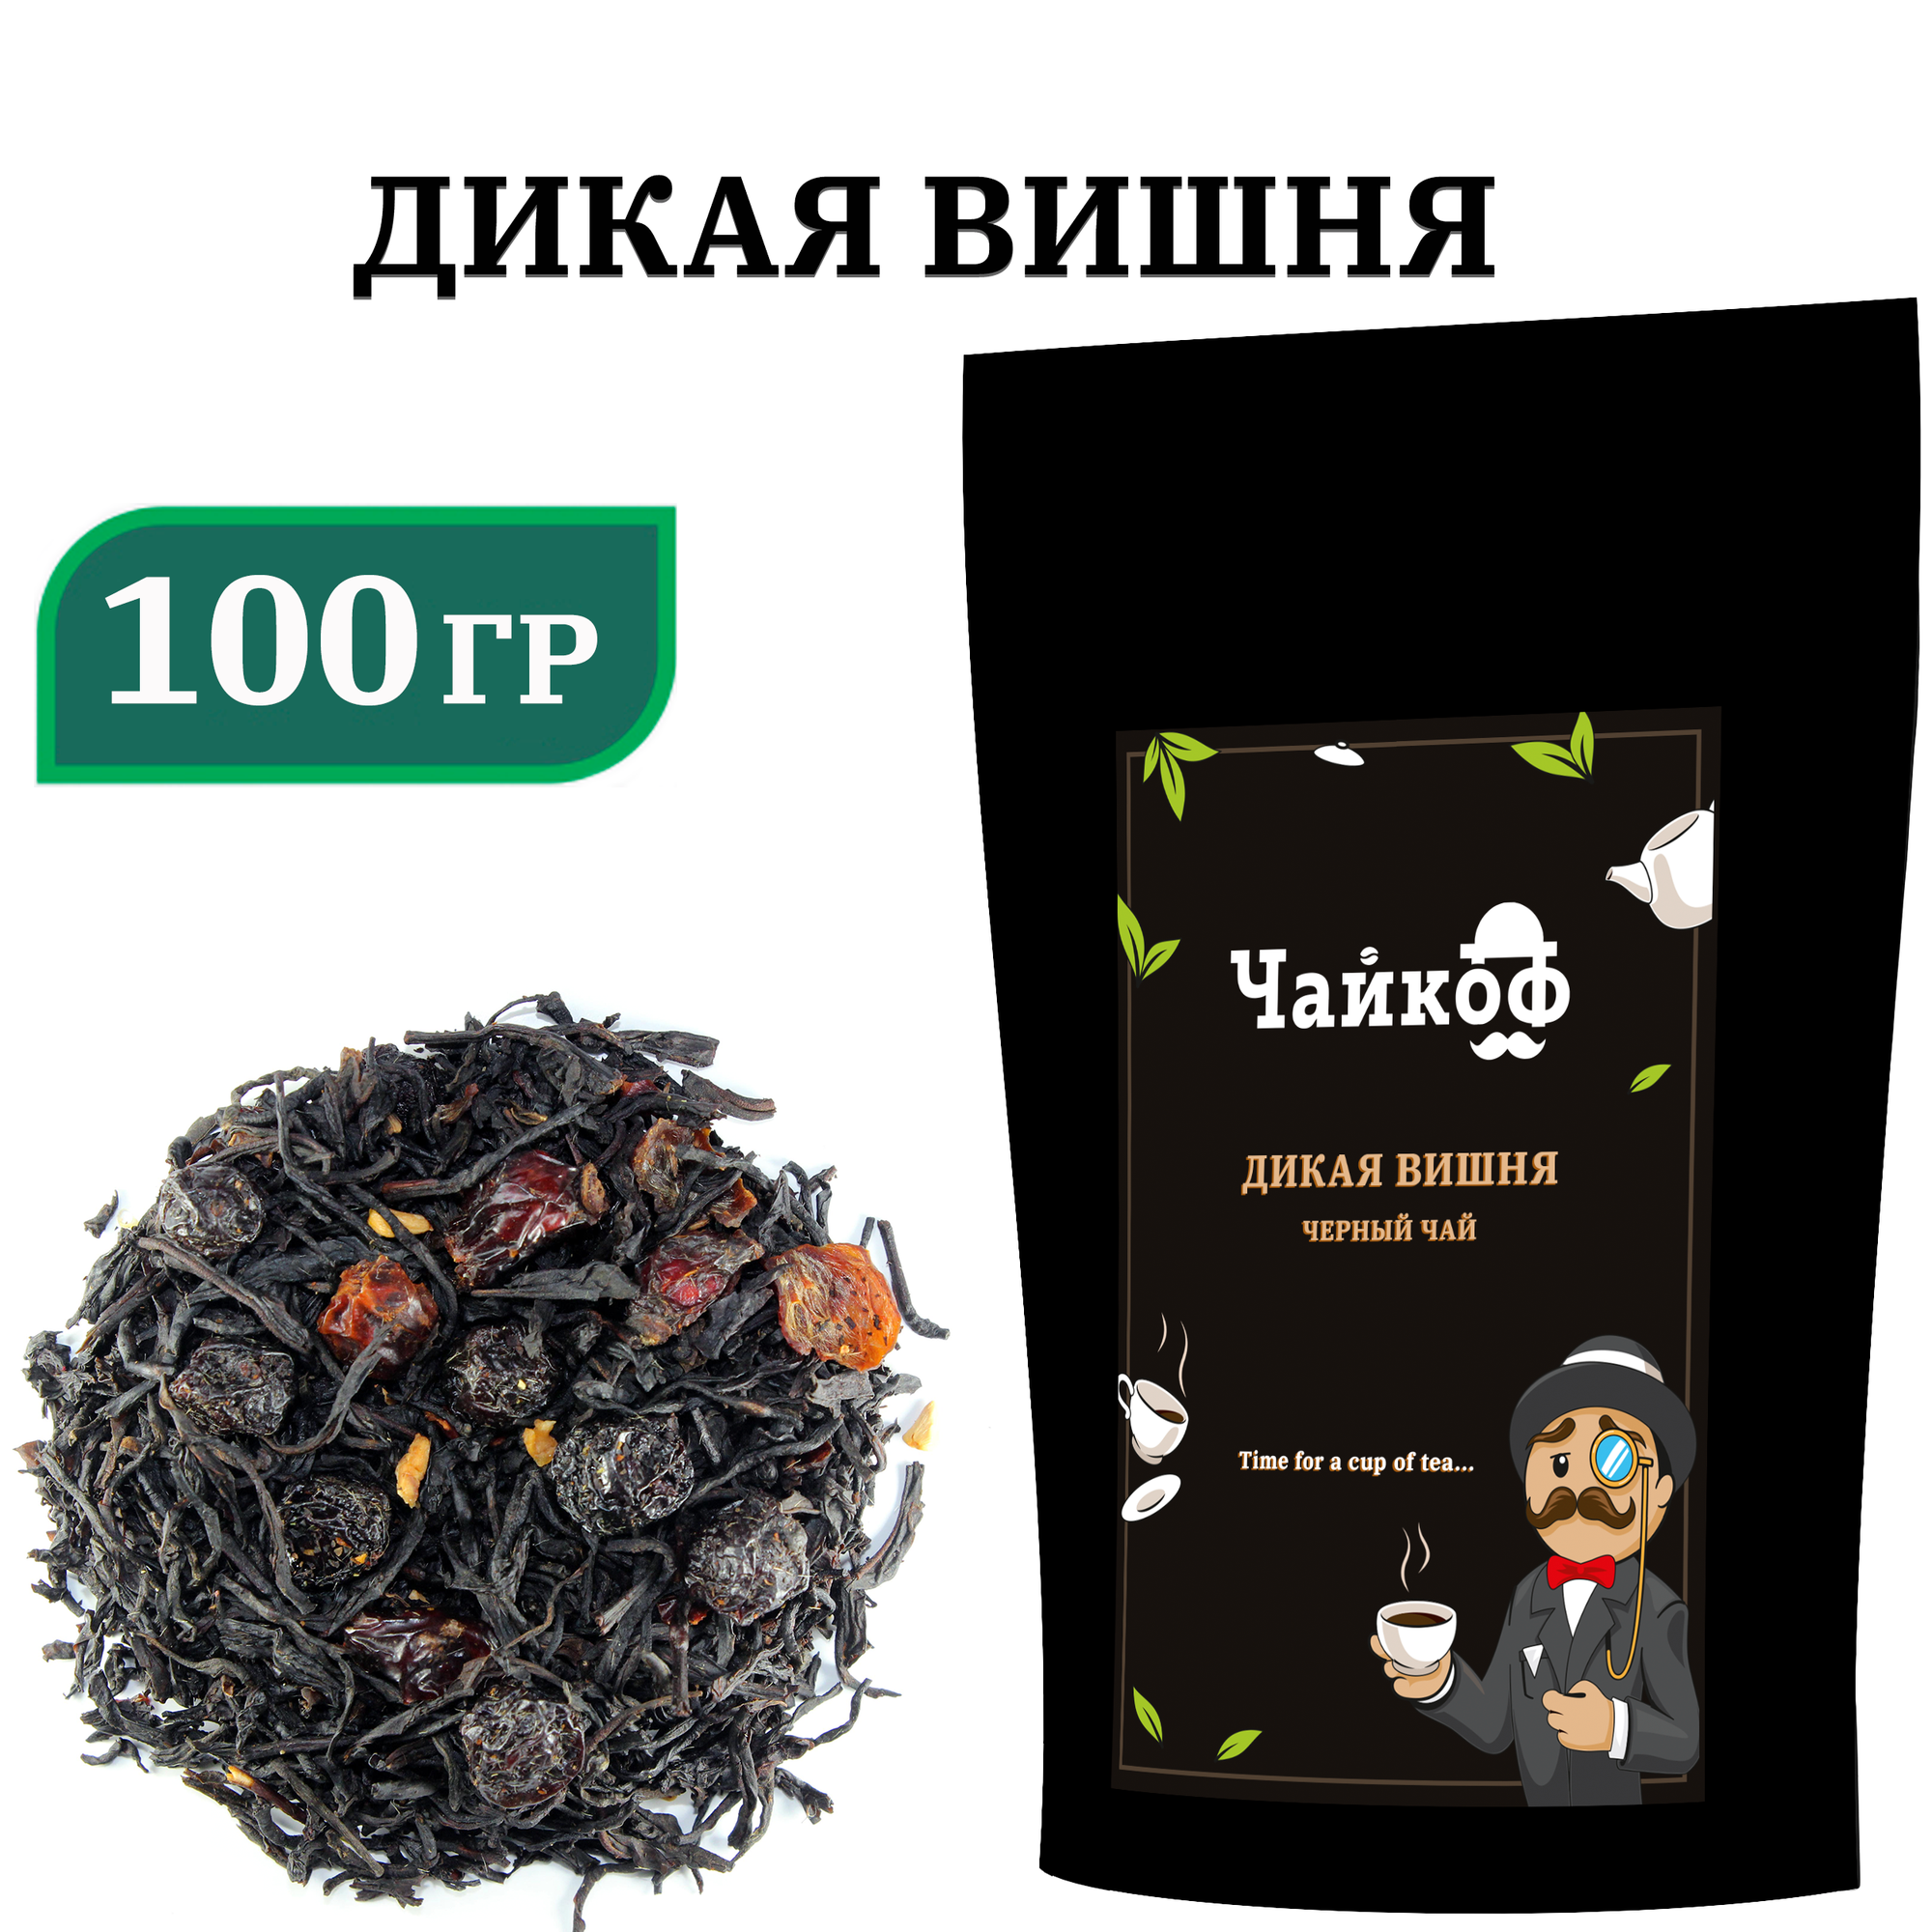 Чай чёрный листовой / вишня и шиповник / Дикая вишня / 100 гр.